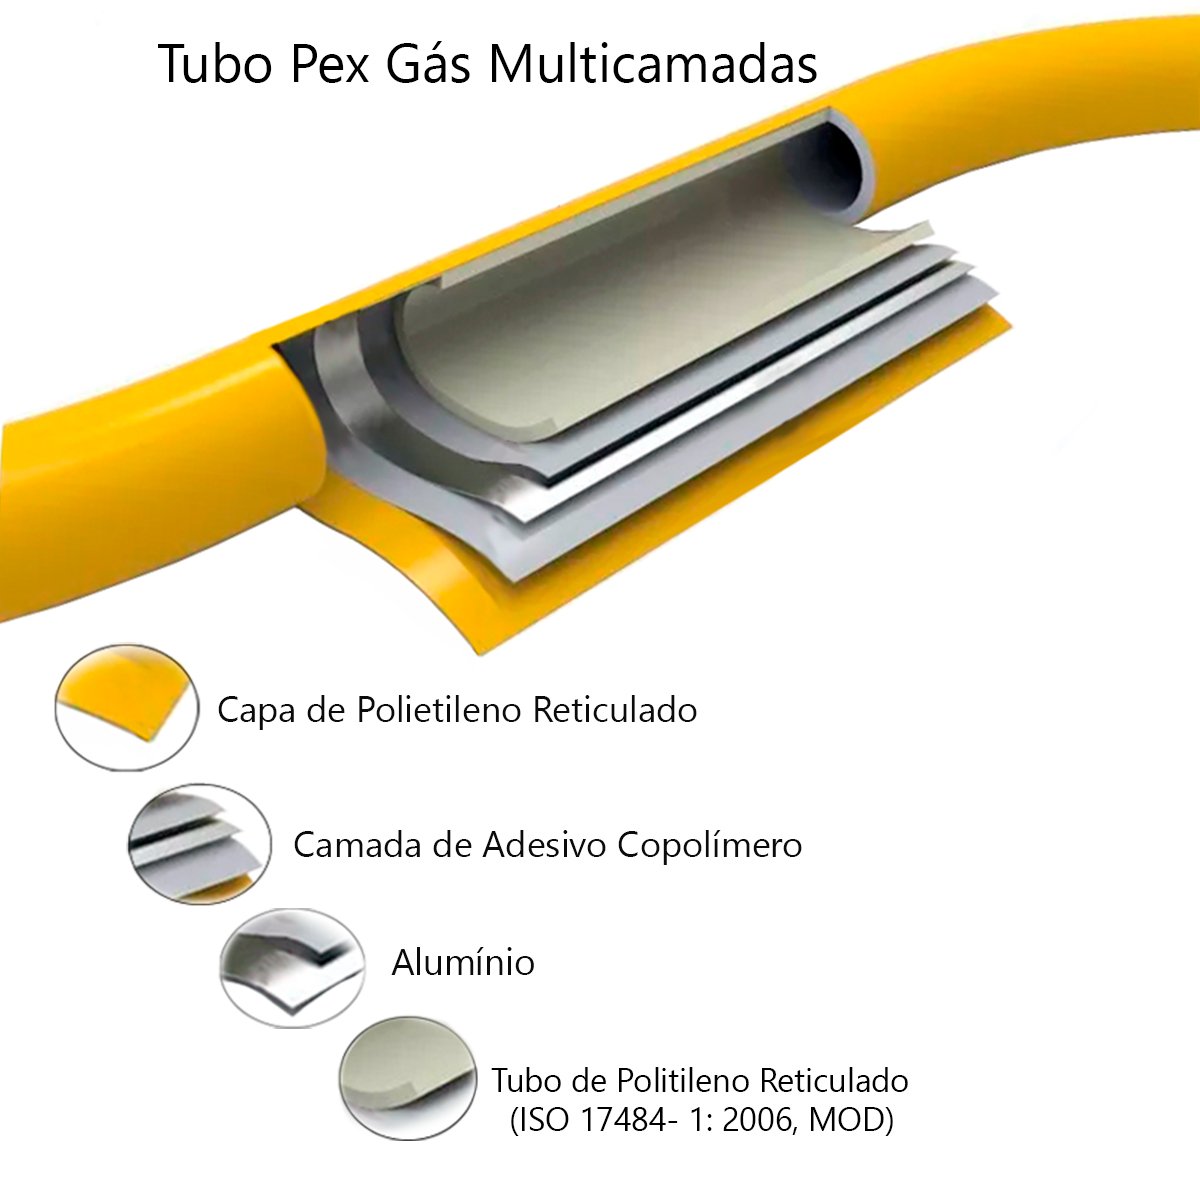 Tubo Pex Gás 16mm Multicamadas Alumínio (100 Metros) TudoGás - 2